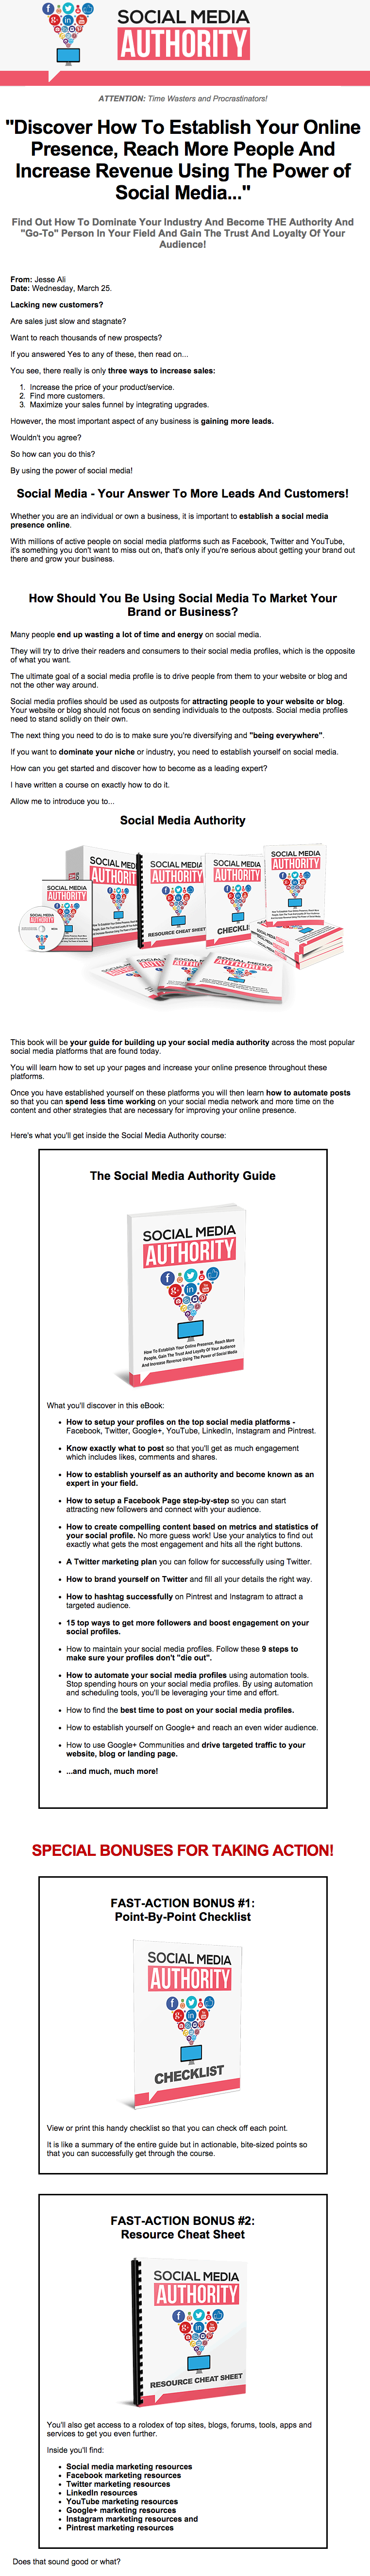 social media authority